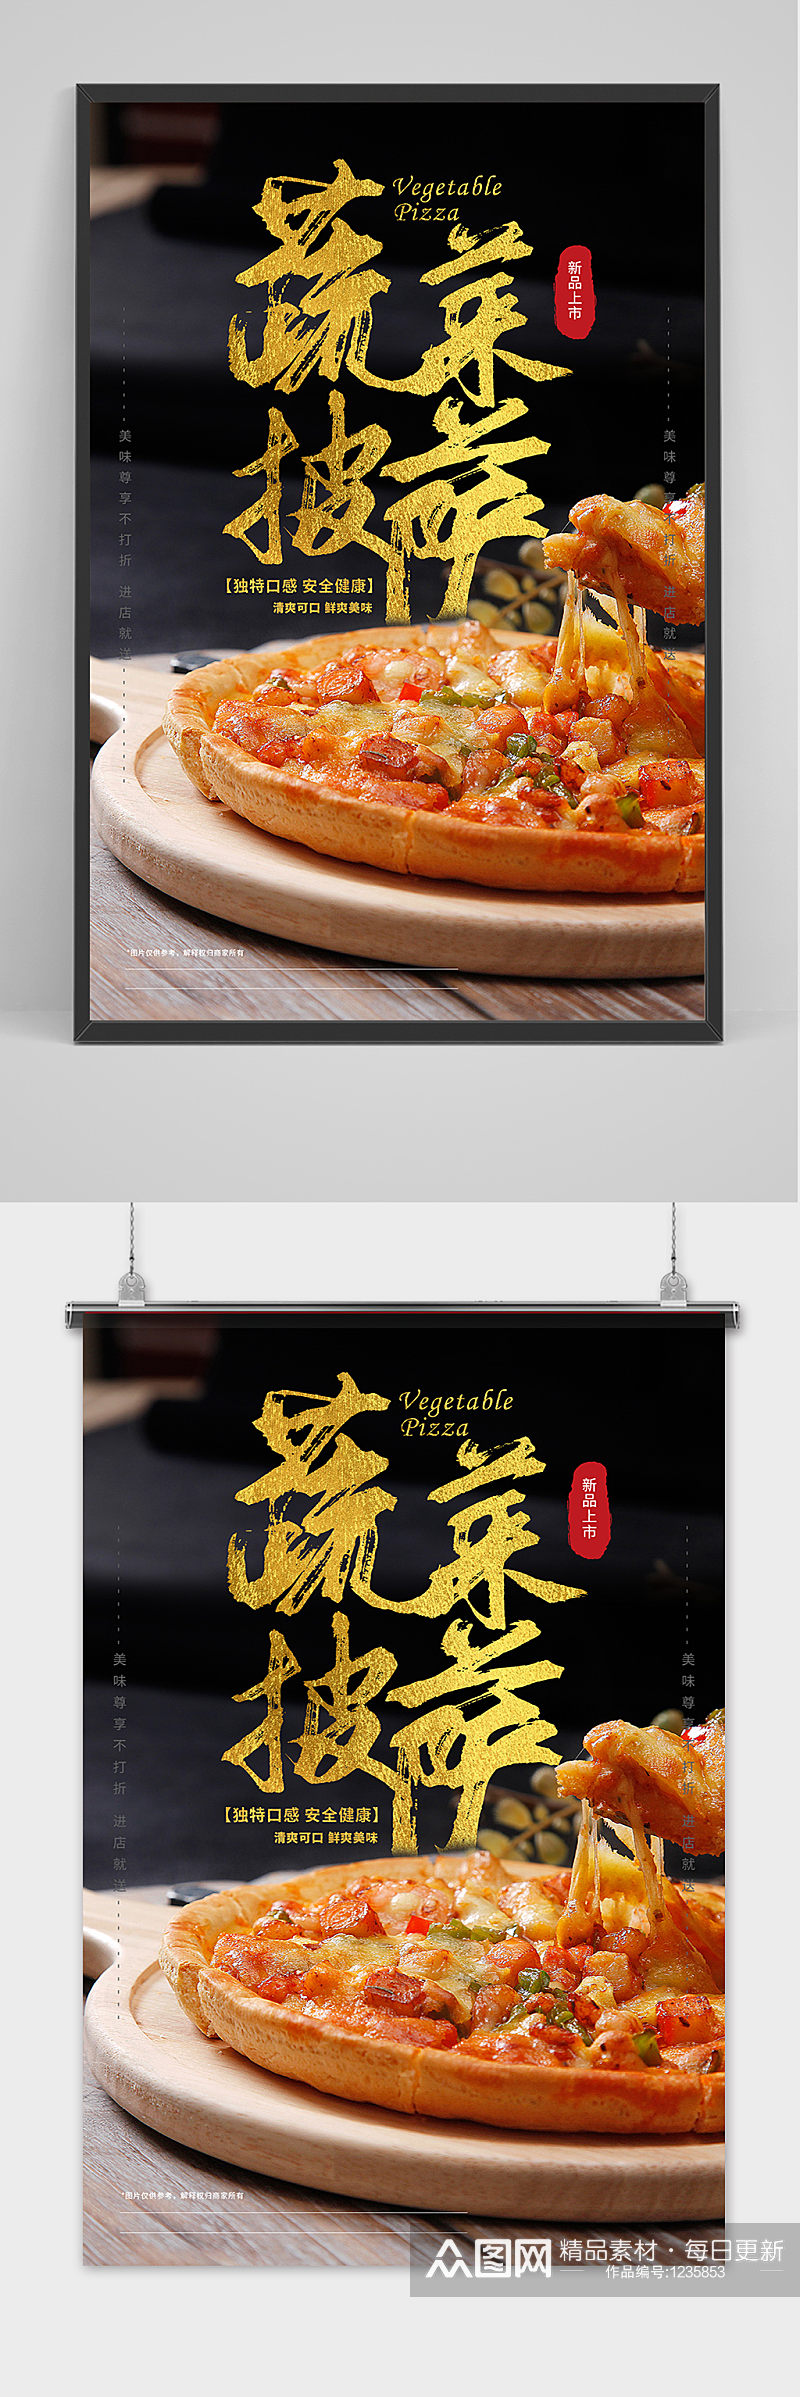 蔬菜披萨快餐餐饮宣传海报素材